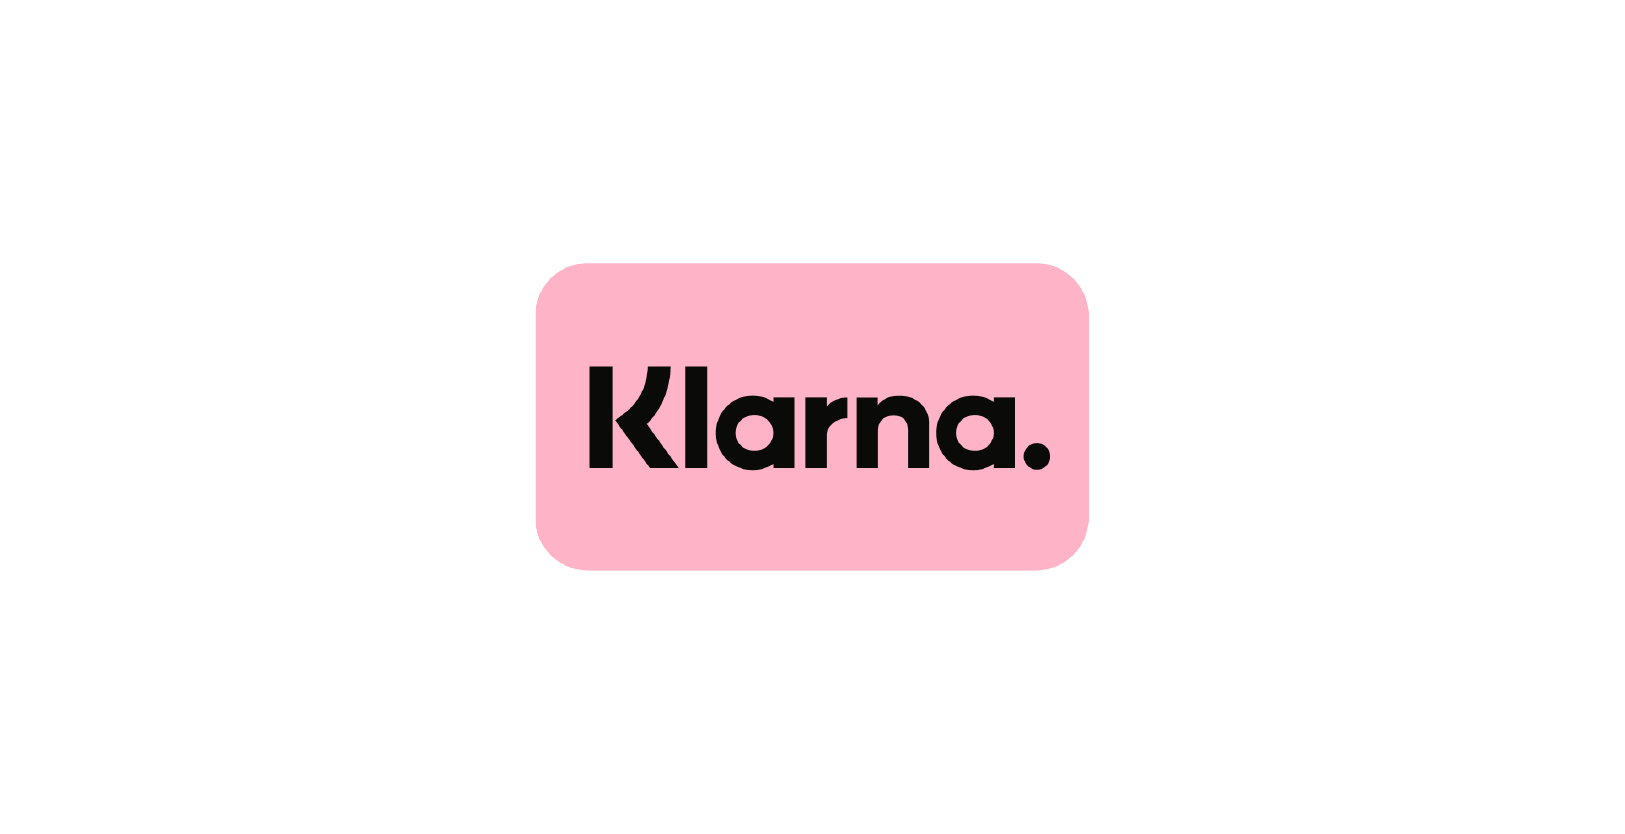 Vision Fund investment portfolio company Klarna's logo